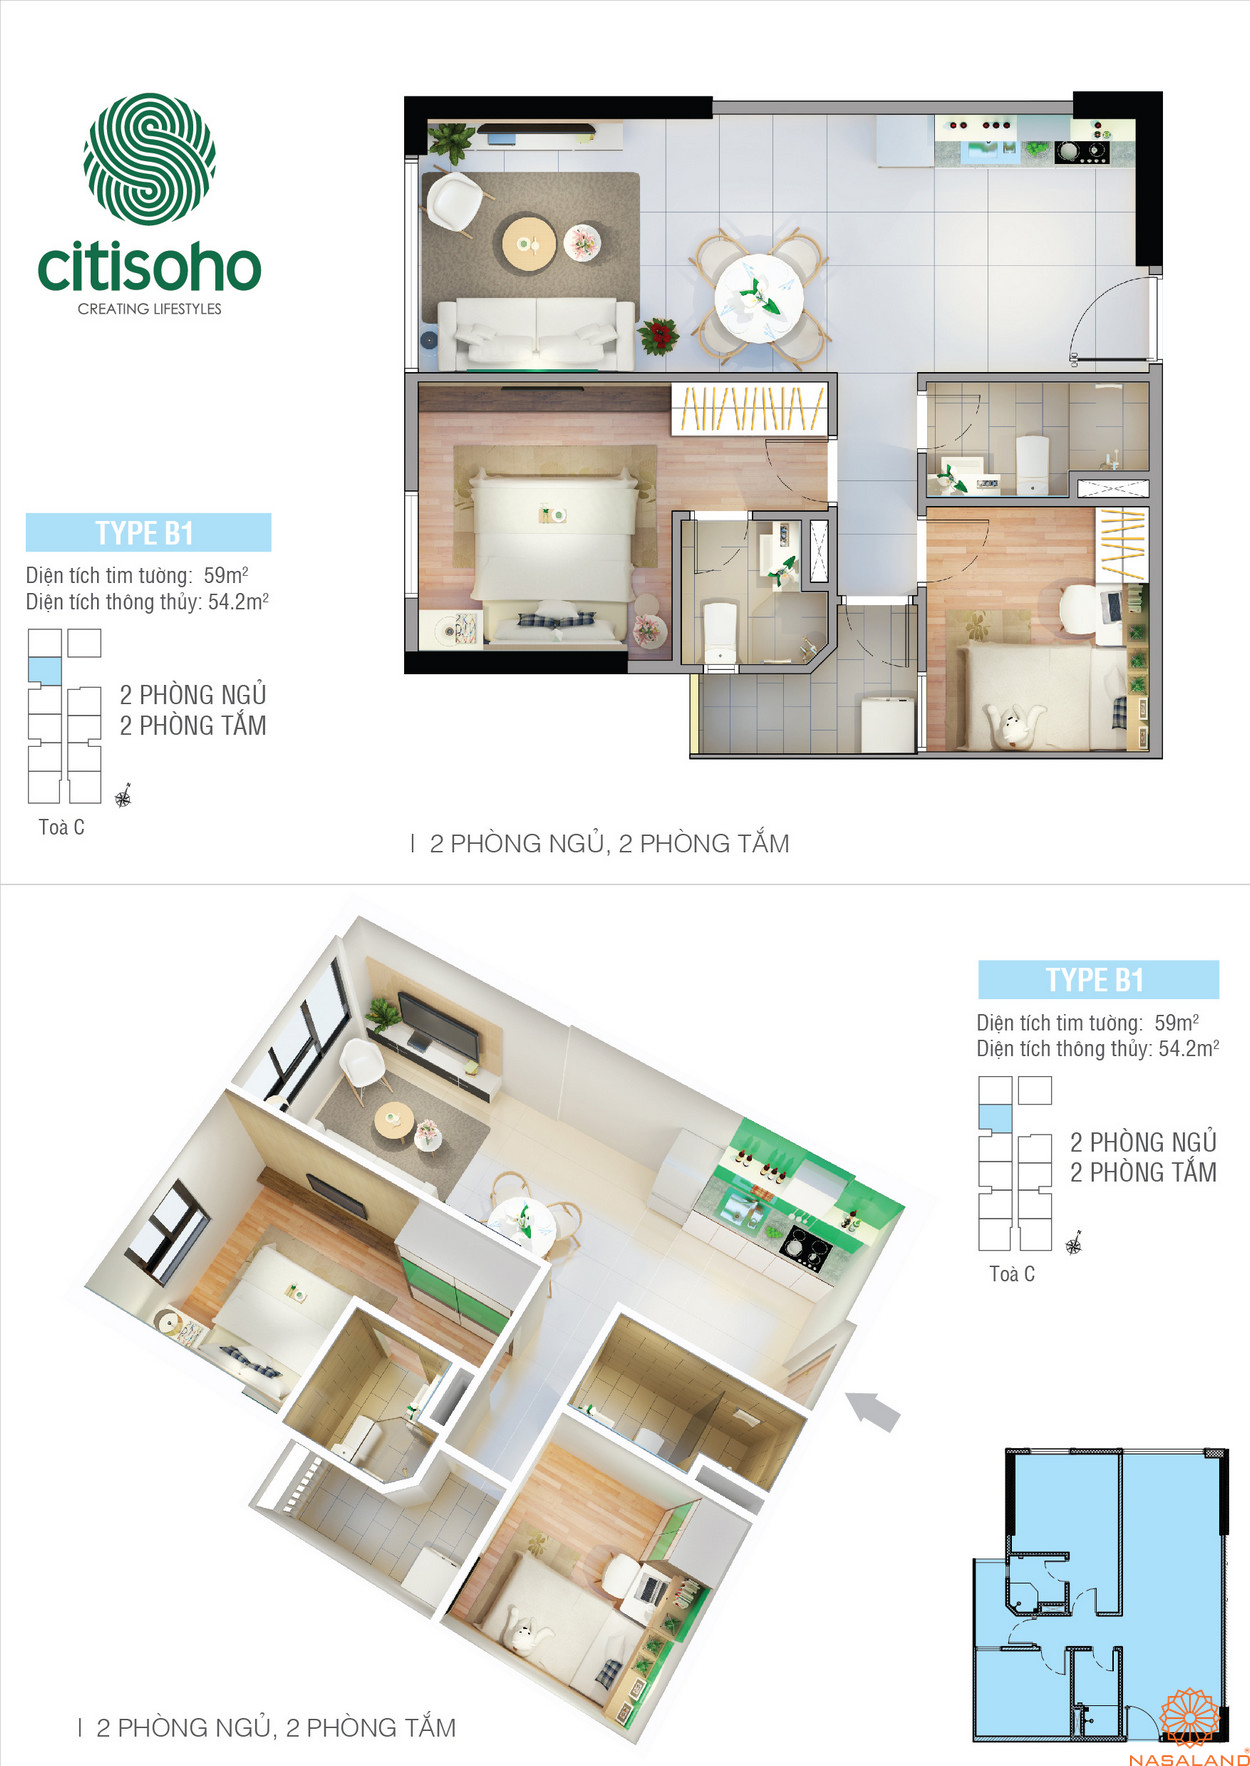 Thiết kế điển hình của căn hộ trong dự án CitiSoho